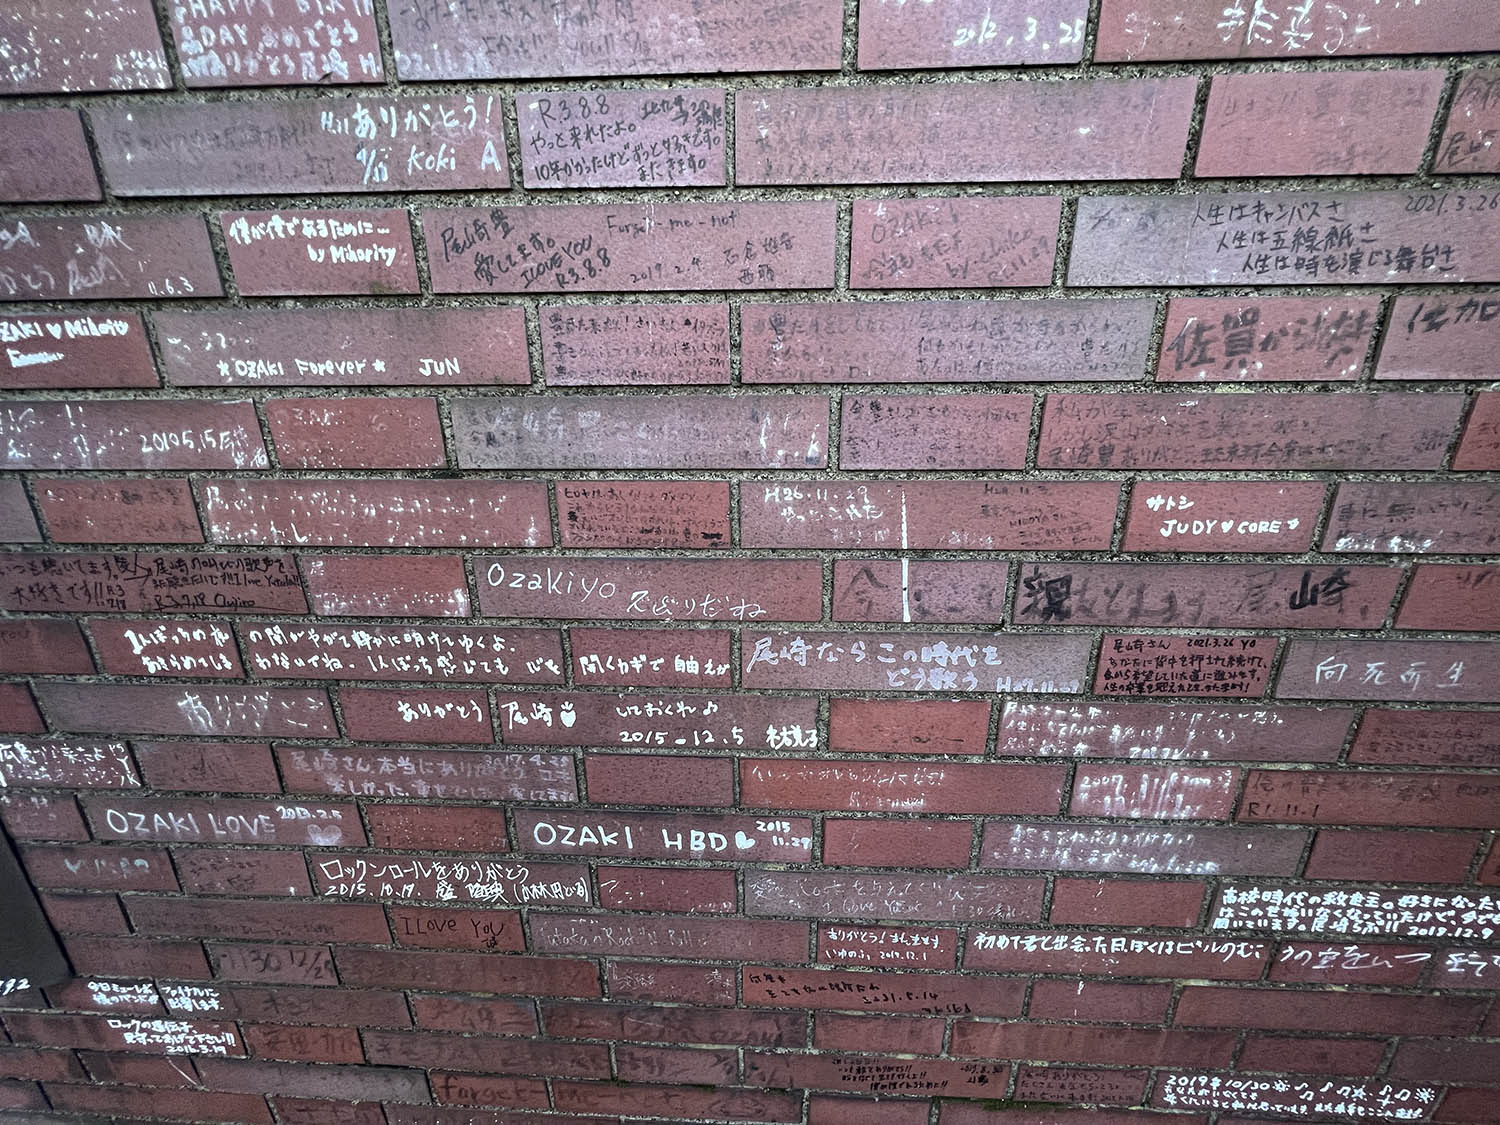 渋谷クロスタワーのデッキ。壁のいたるところファンの寄せ書きでびっしりと埋まり、いかにも“聖地”といった感じだ。